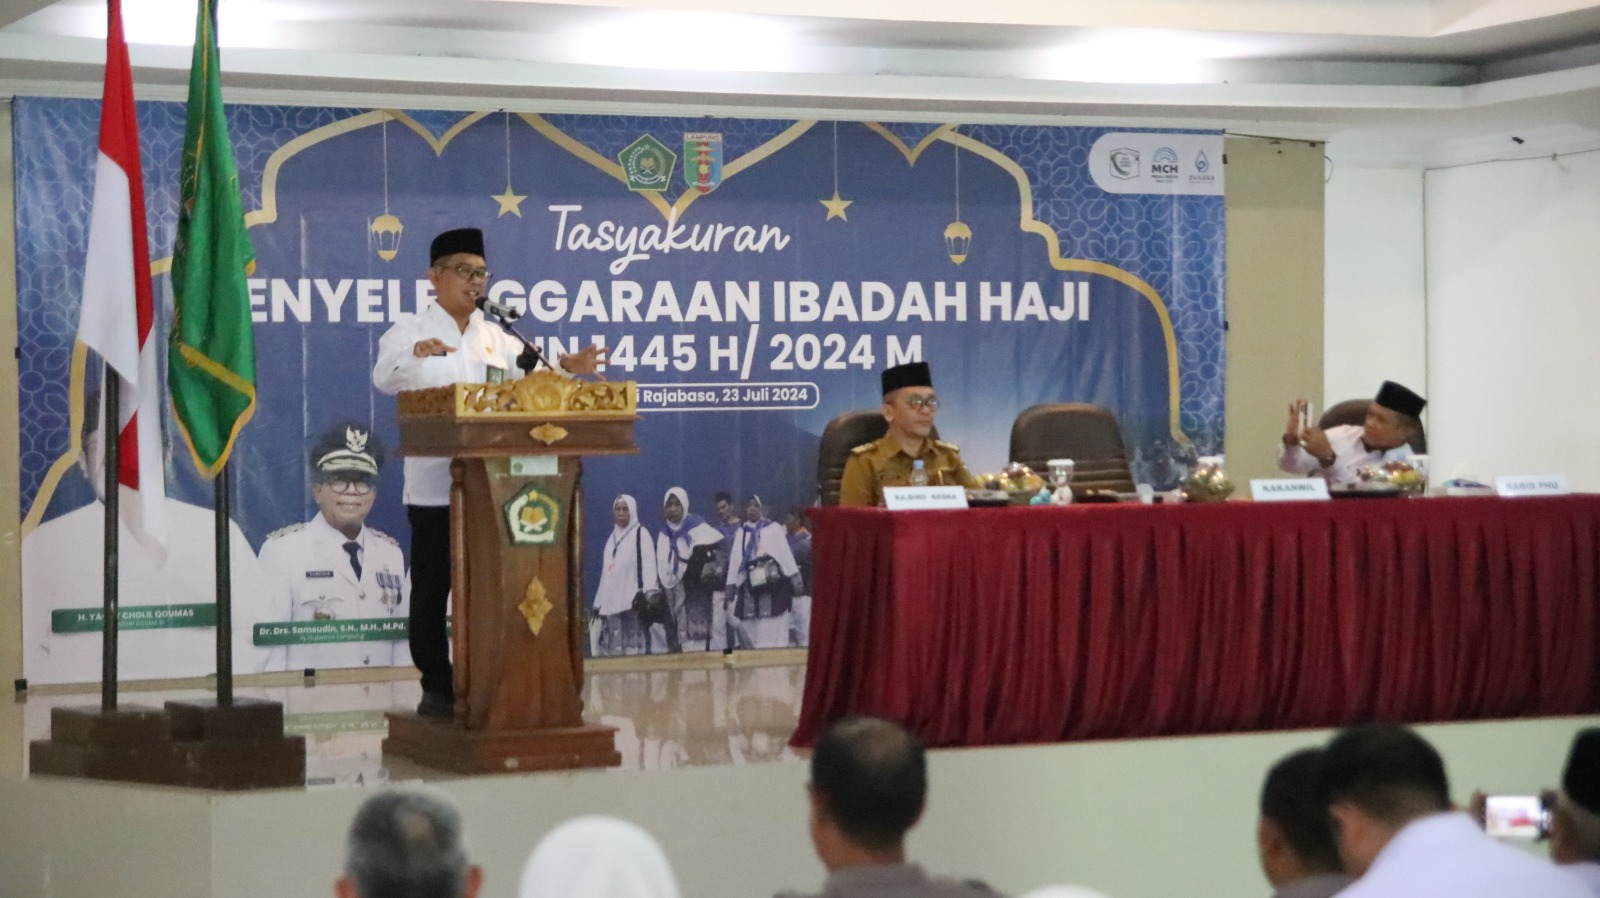 Kemenag Lampung Sebut Kesuksesan Pelaksanaan Haji Berkat Kerja Keras Semua Pihak